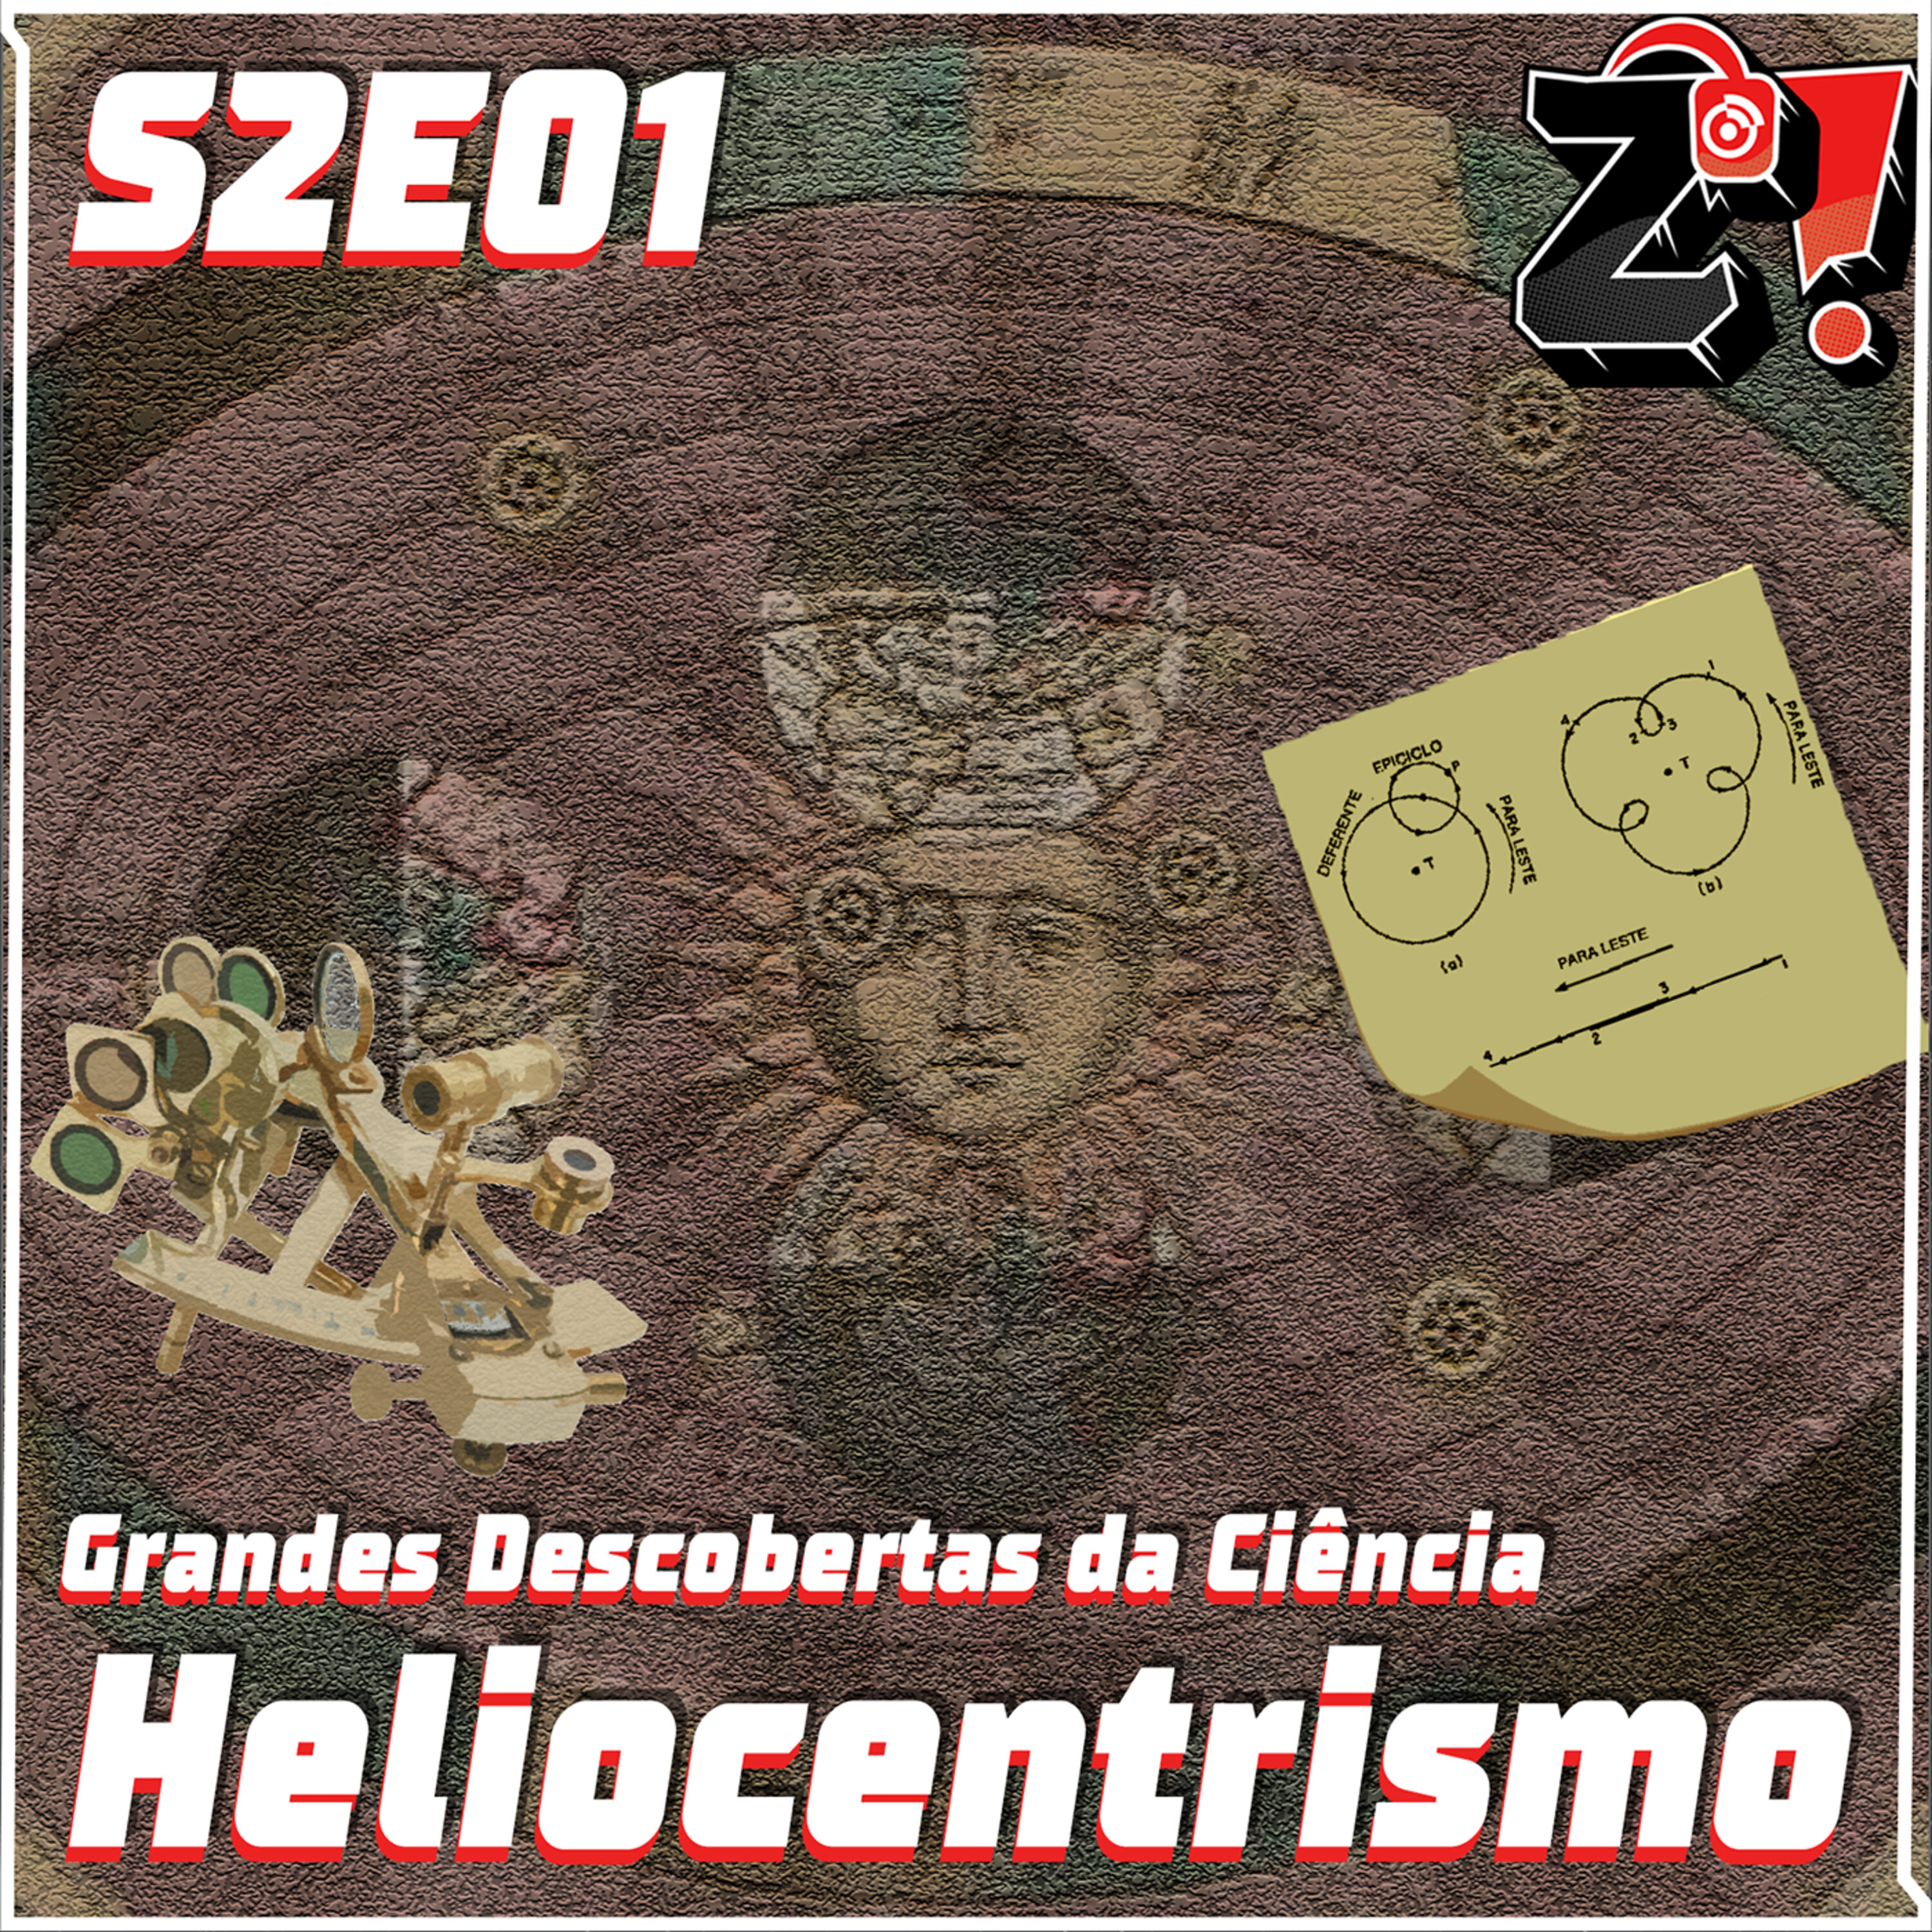 ZiCast S2E01 - Grandes Descobertas da Ciência: Heliocentrismo